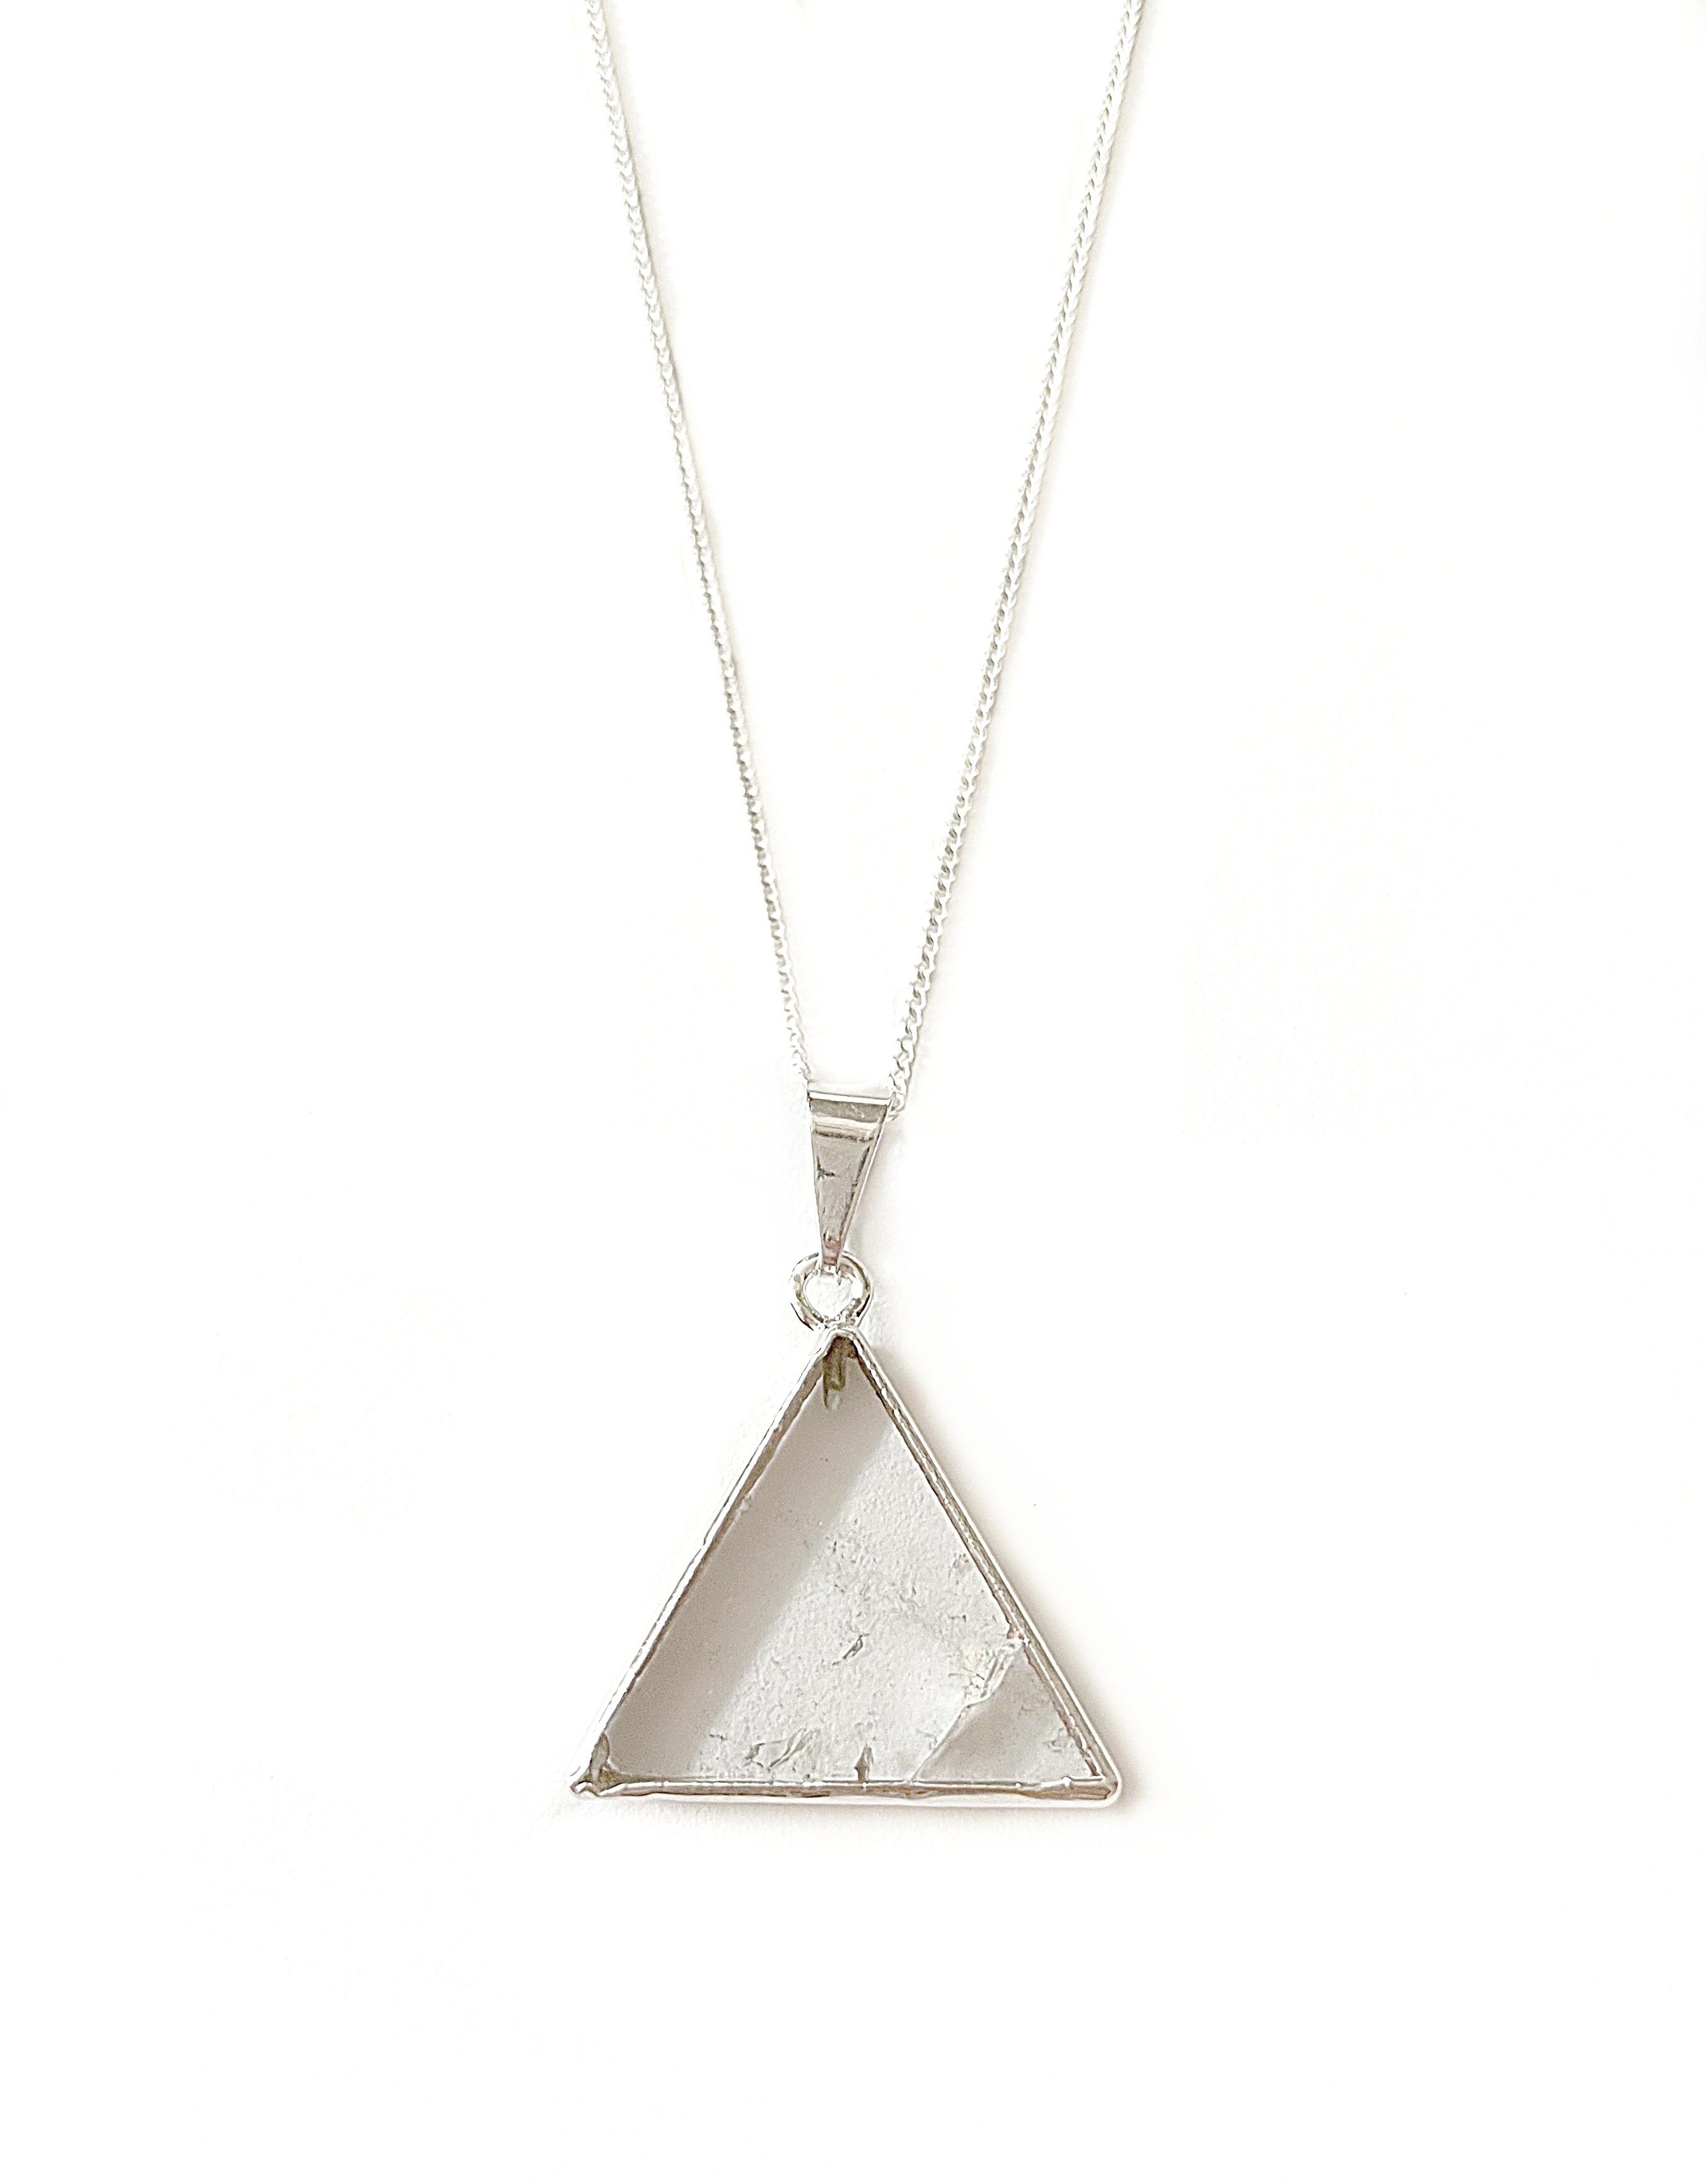 Bergkristall Crystal Sage versilbert and mit Jewelry Anhänger Halskette Kette vergoldet Dreieck oder